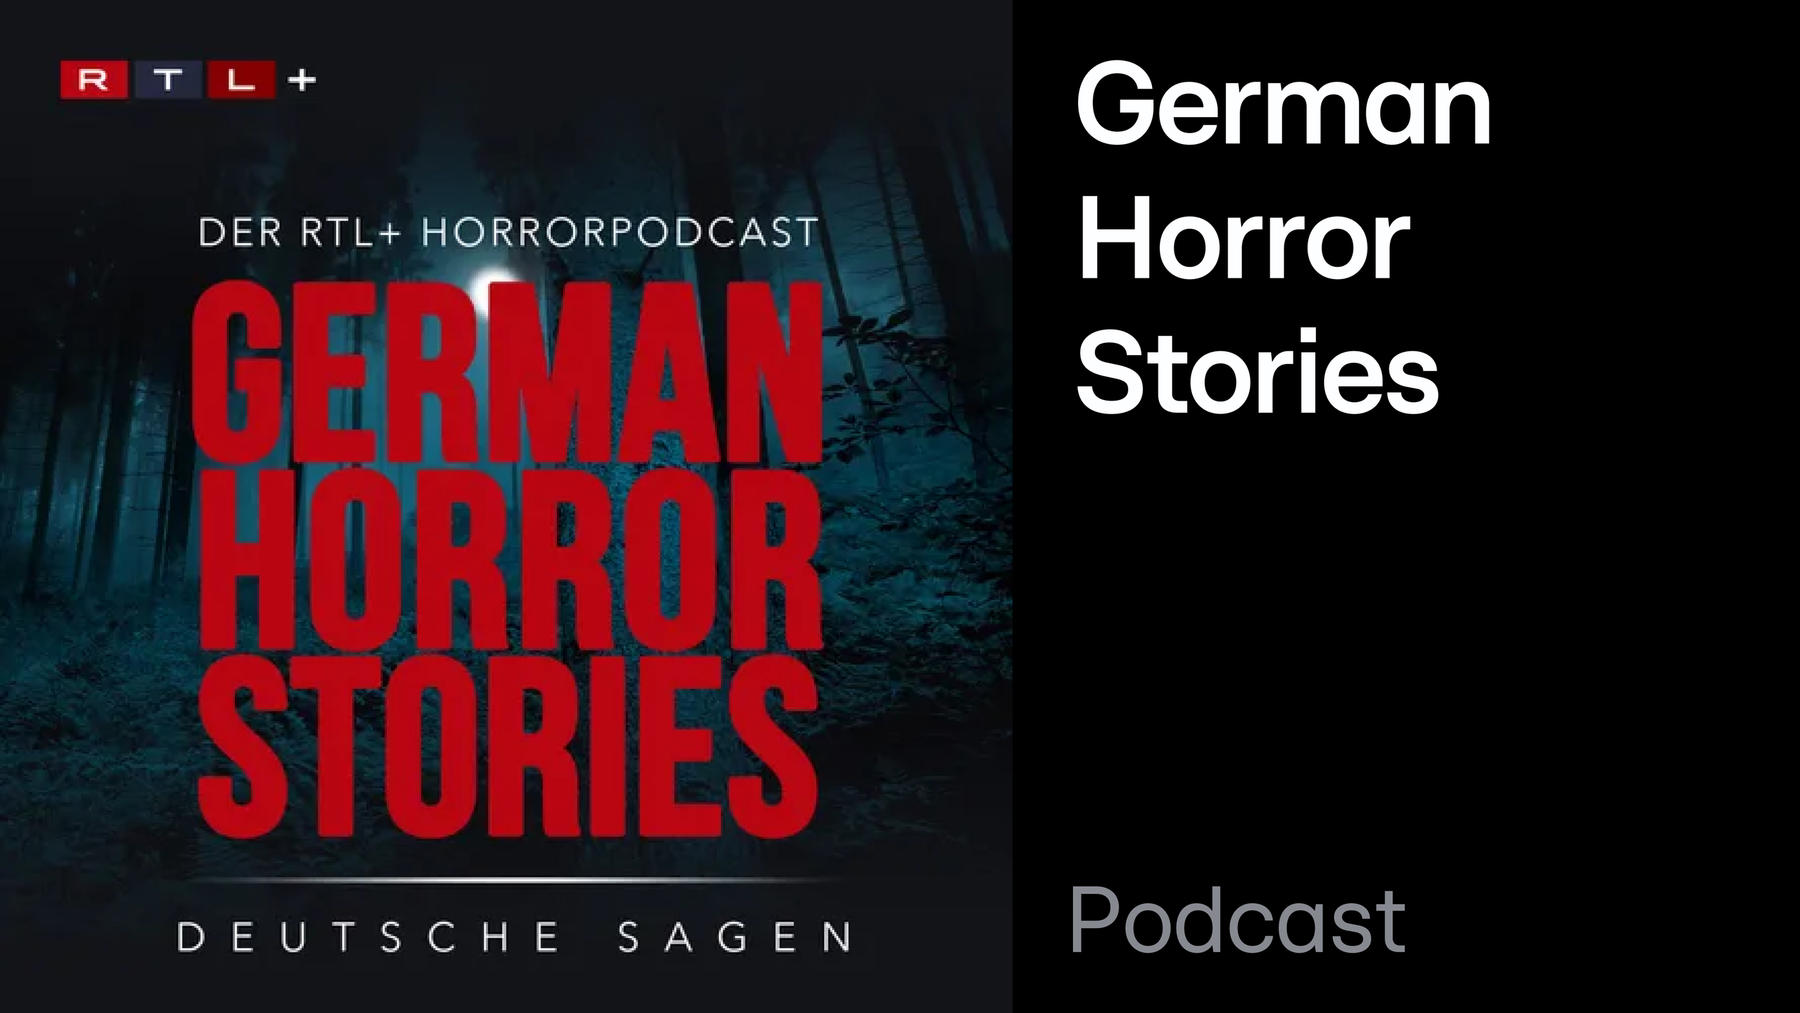 Podcast: GERMAN HORROR STORIES – DEUTSCHE SAGEN